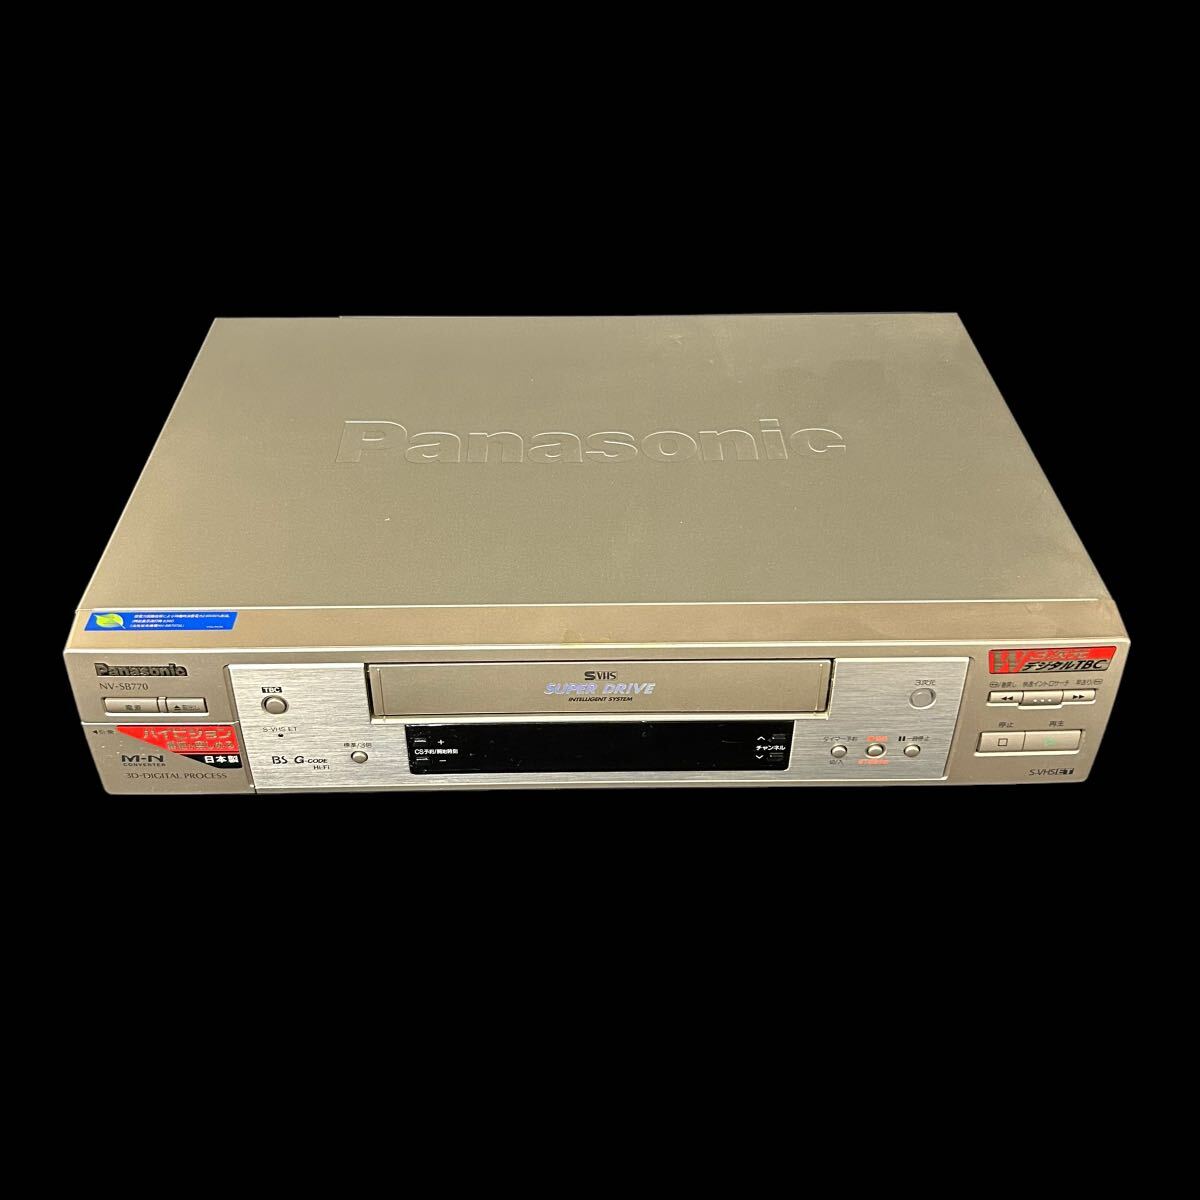 Panasonic パナソニック NV-SB770 ビデオデッキ S-VHS 98年製 3次元デジタル 映像機器 家庭用ビデオ 電源コード付_画像2